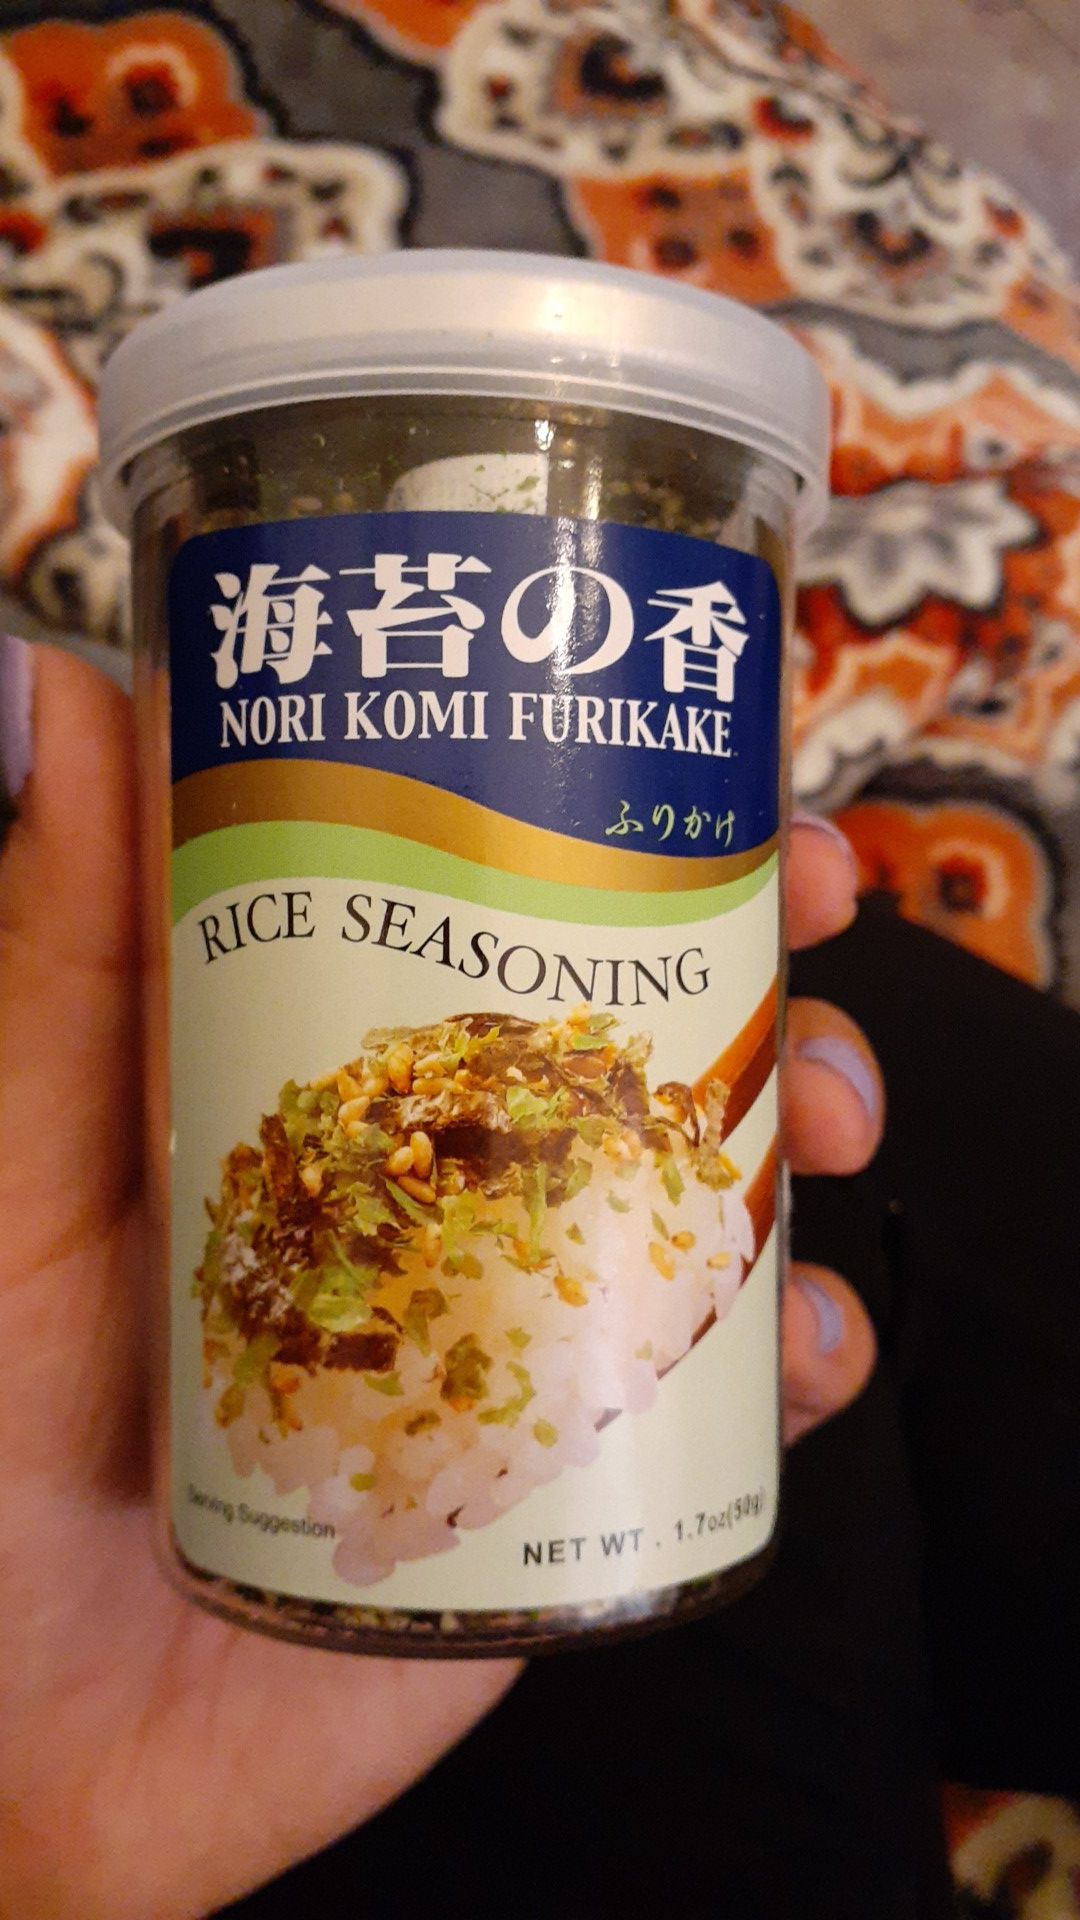 Rice seasoning